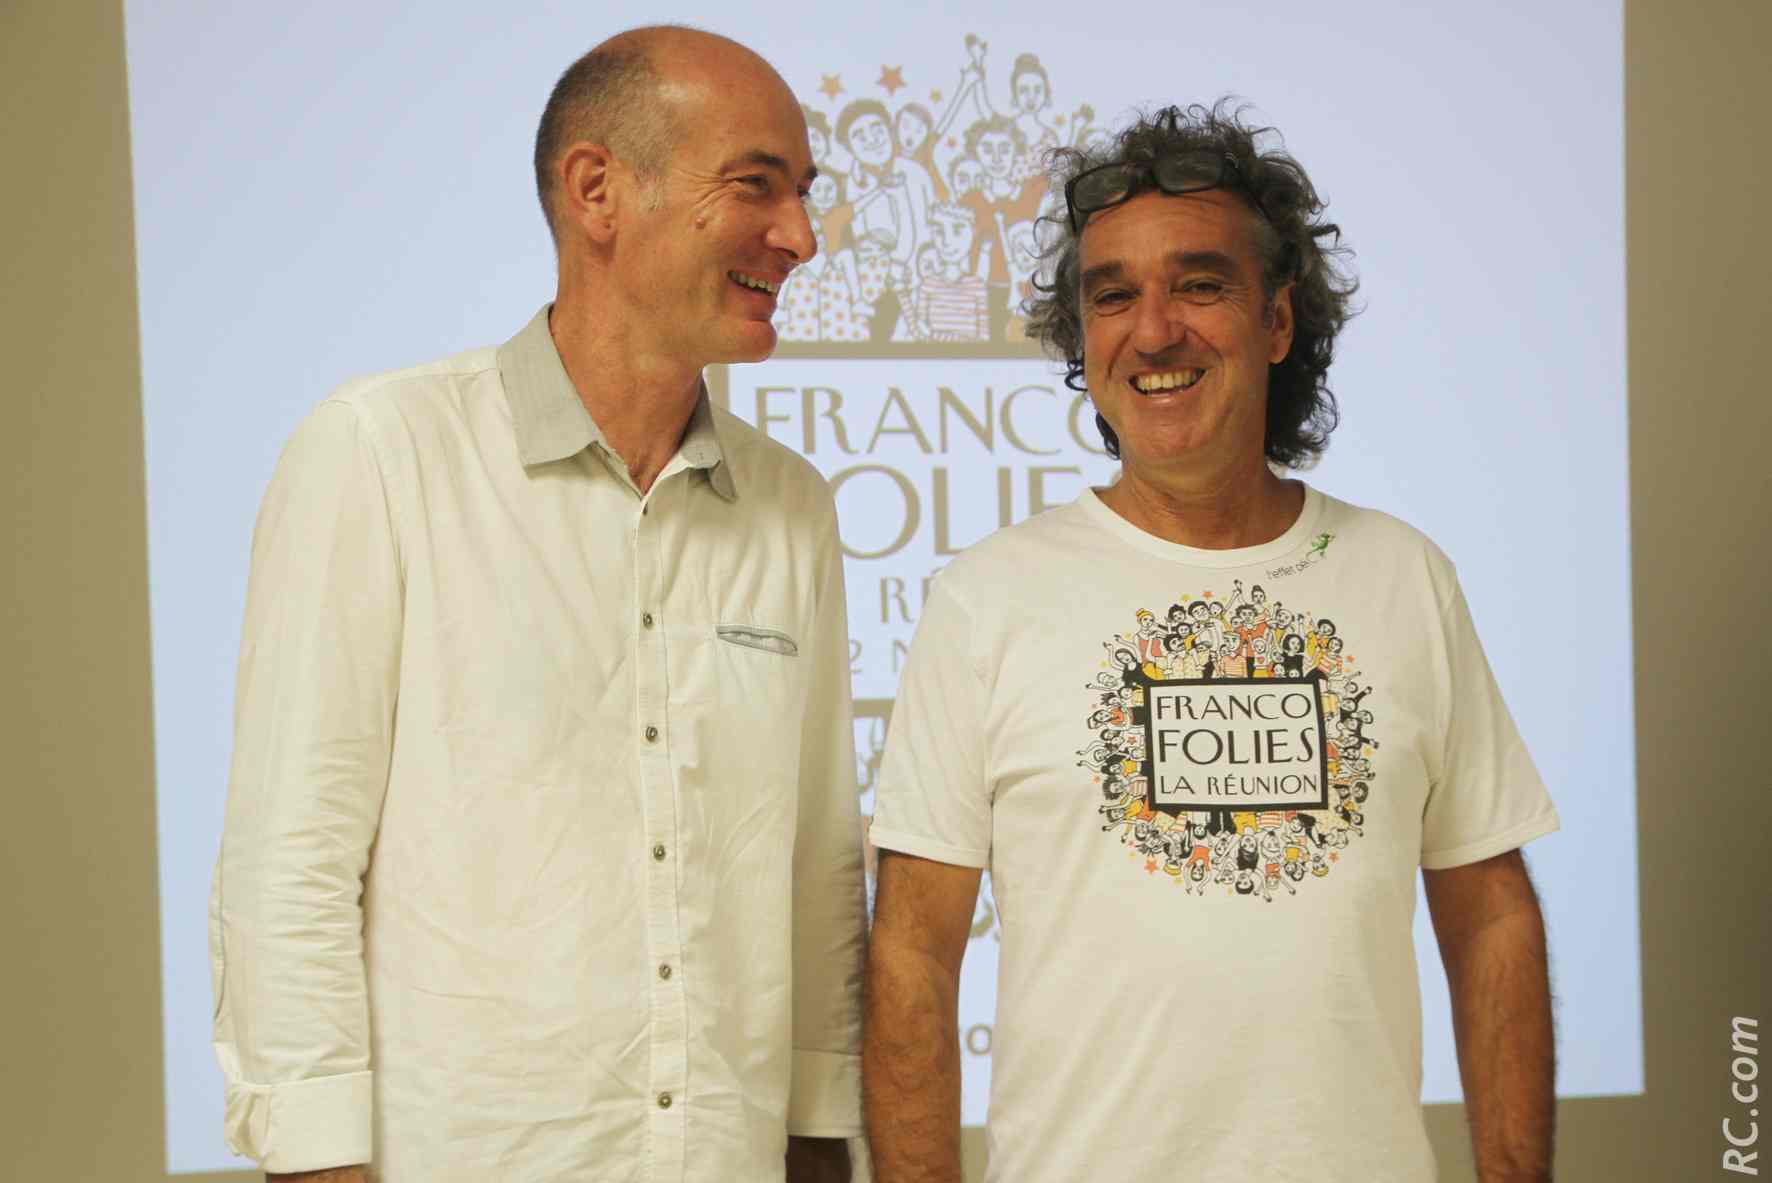 François Vigneron, Directeur du Conservatoire Régional de Musique et Jérôme Galabert semblent être sur la même longueur d'ondes